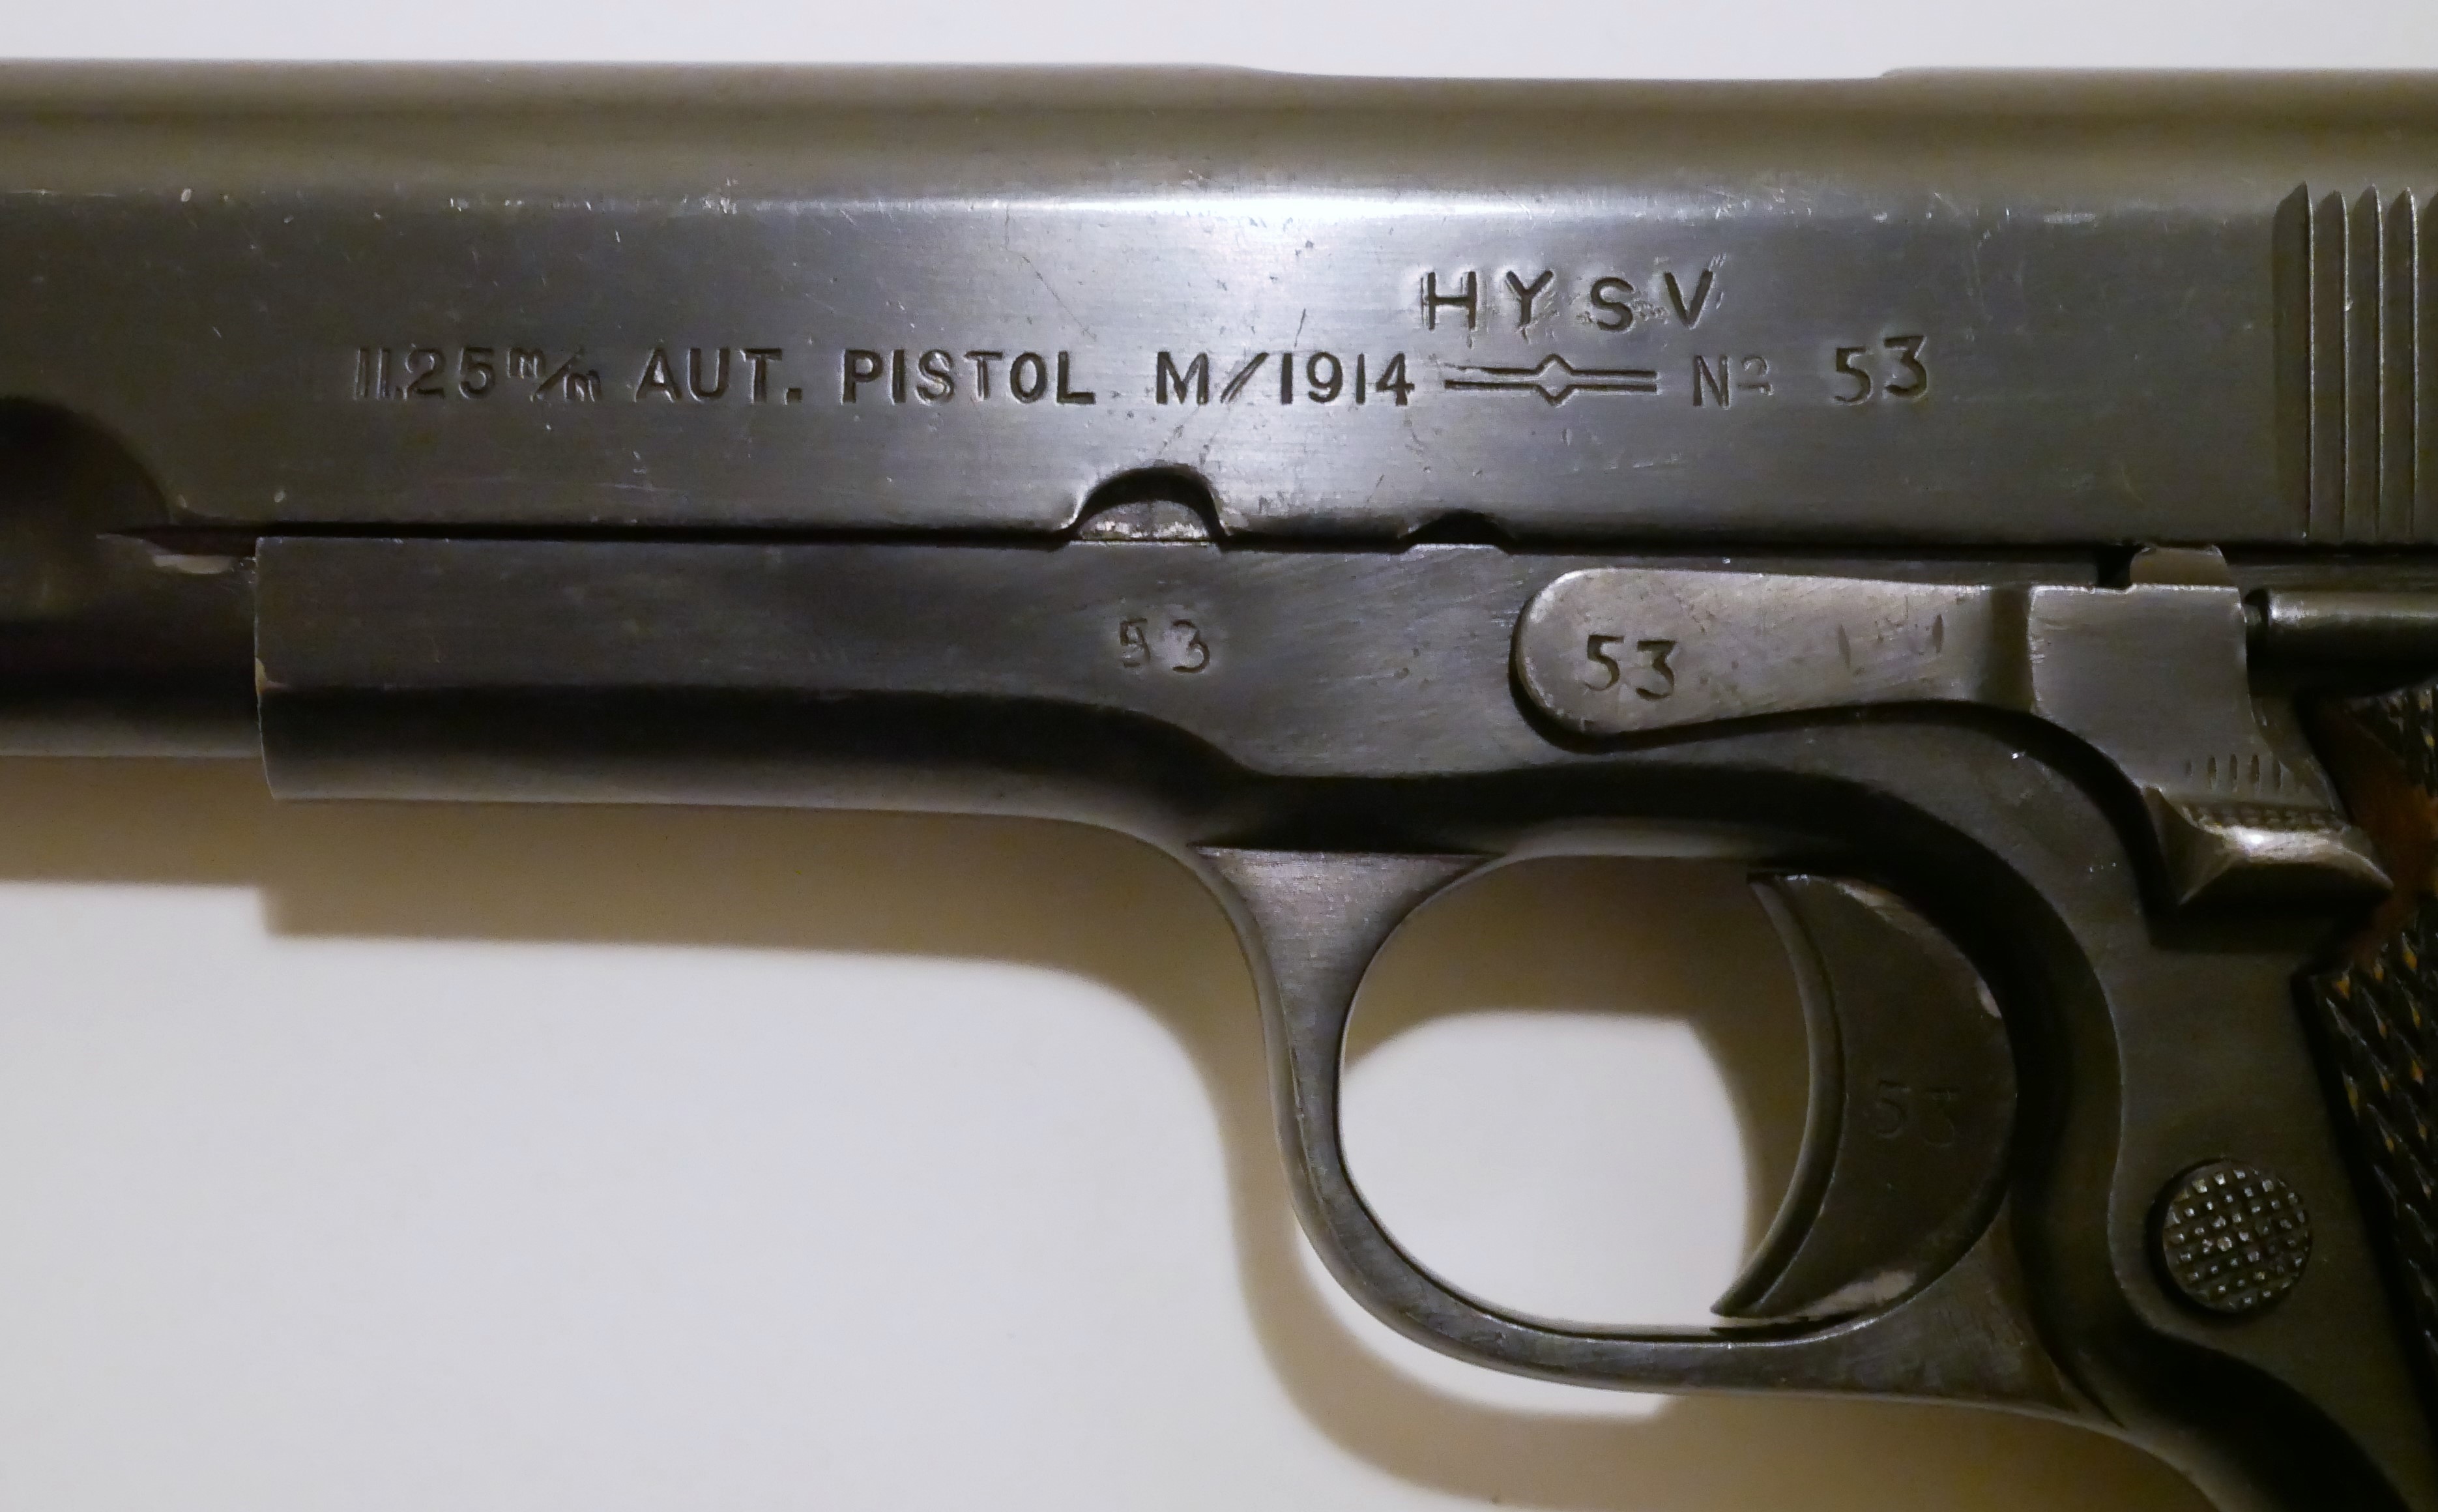 ./guns/pistol/bilder/Pistol-Kongsberg-M1914-HYSV-53-3.JPG